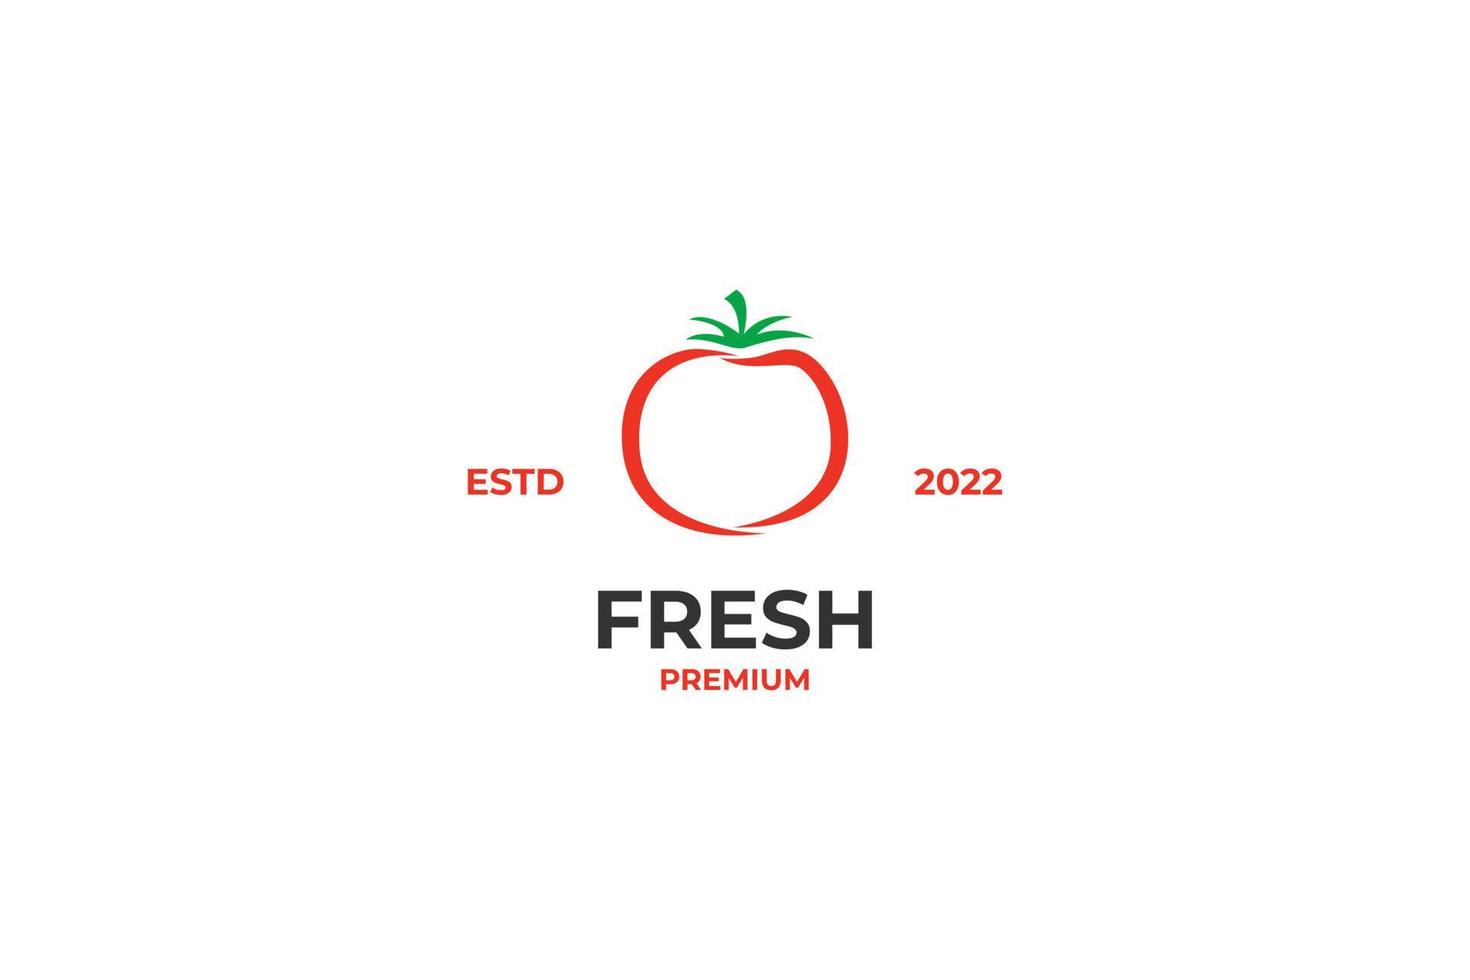 diseño de icono de logotipo de tomates frescos planos idea de ilustración vectorial vector